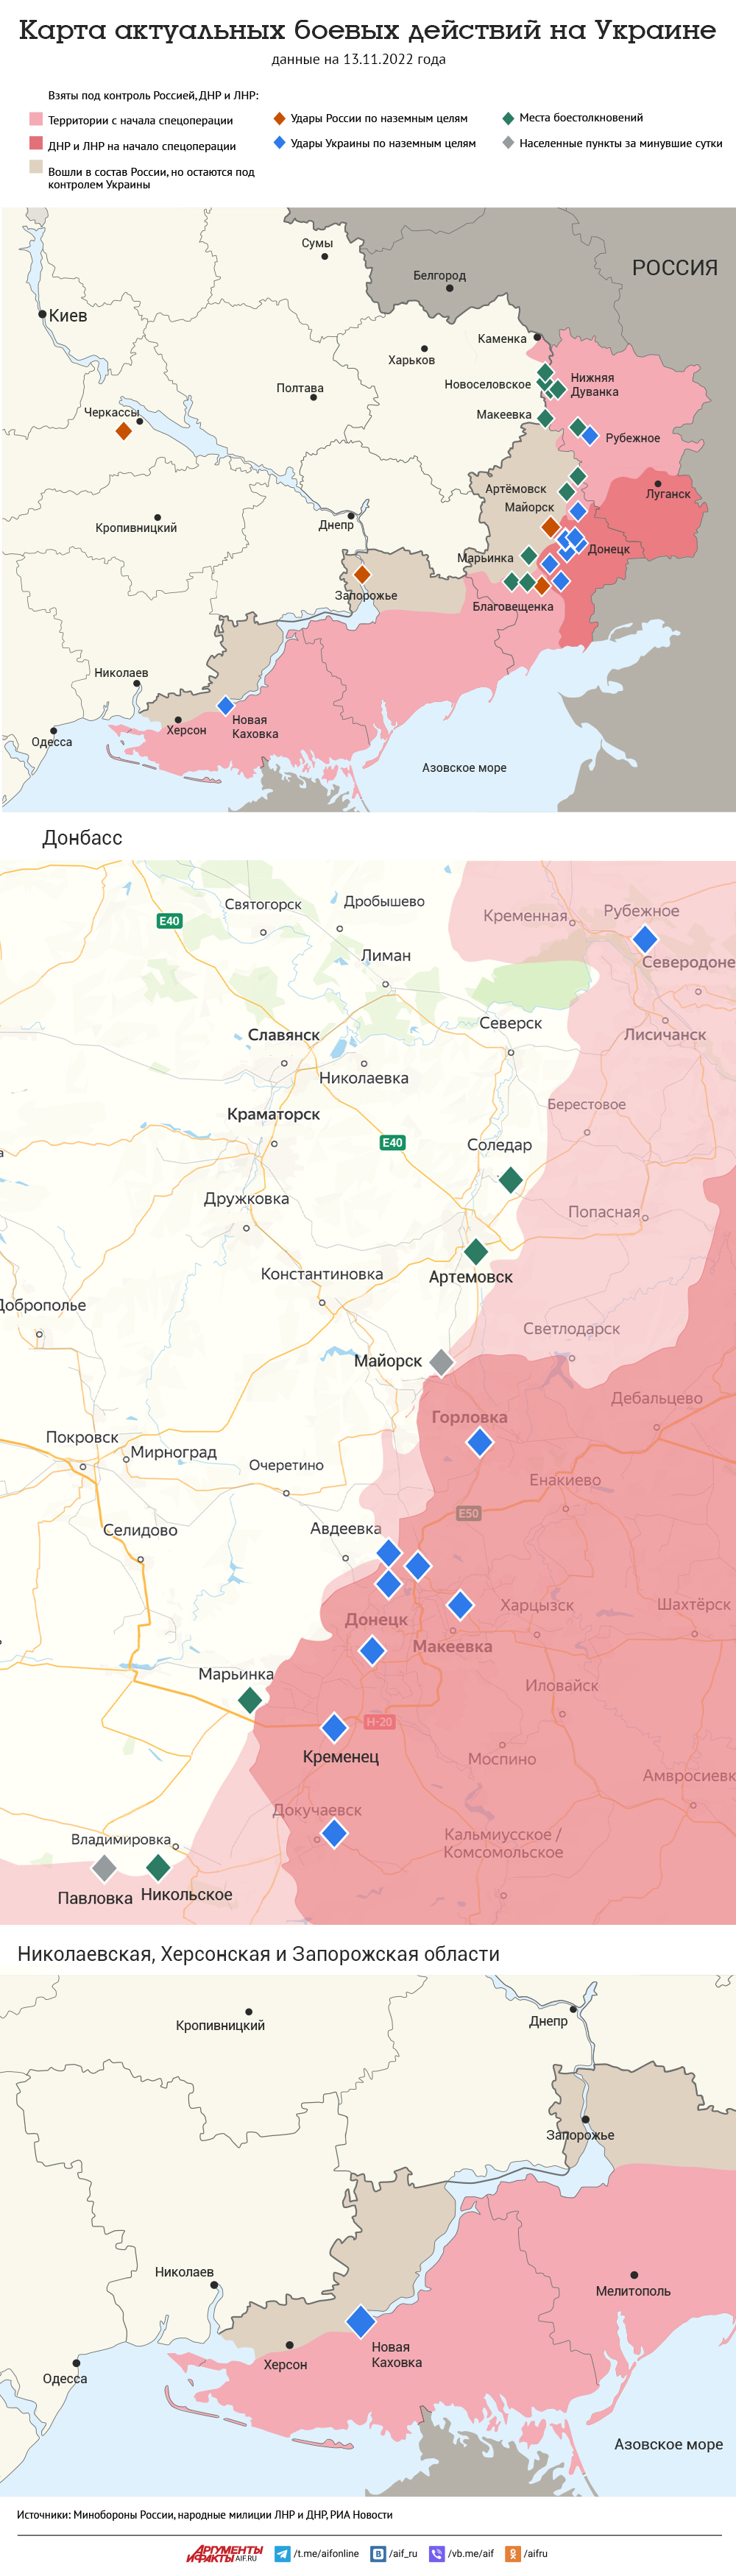 Карта боевых действий на Украине на 14.11.2022. Инфографика